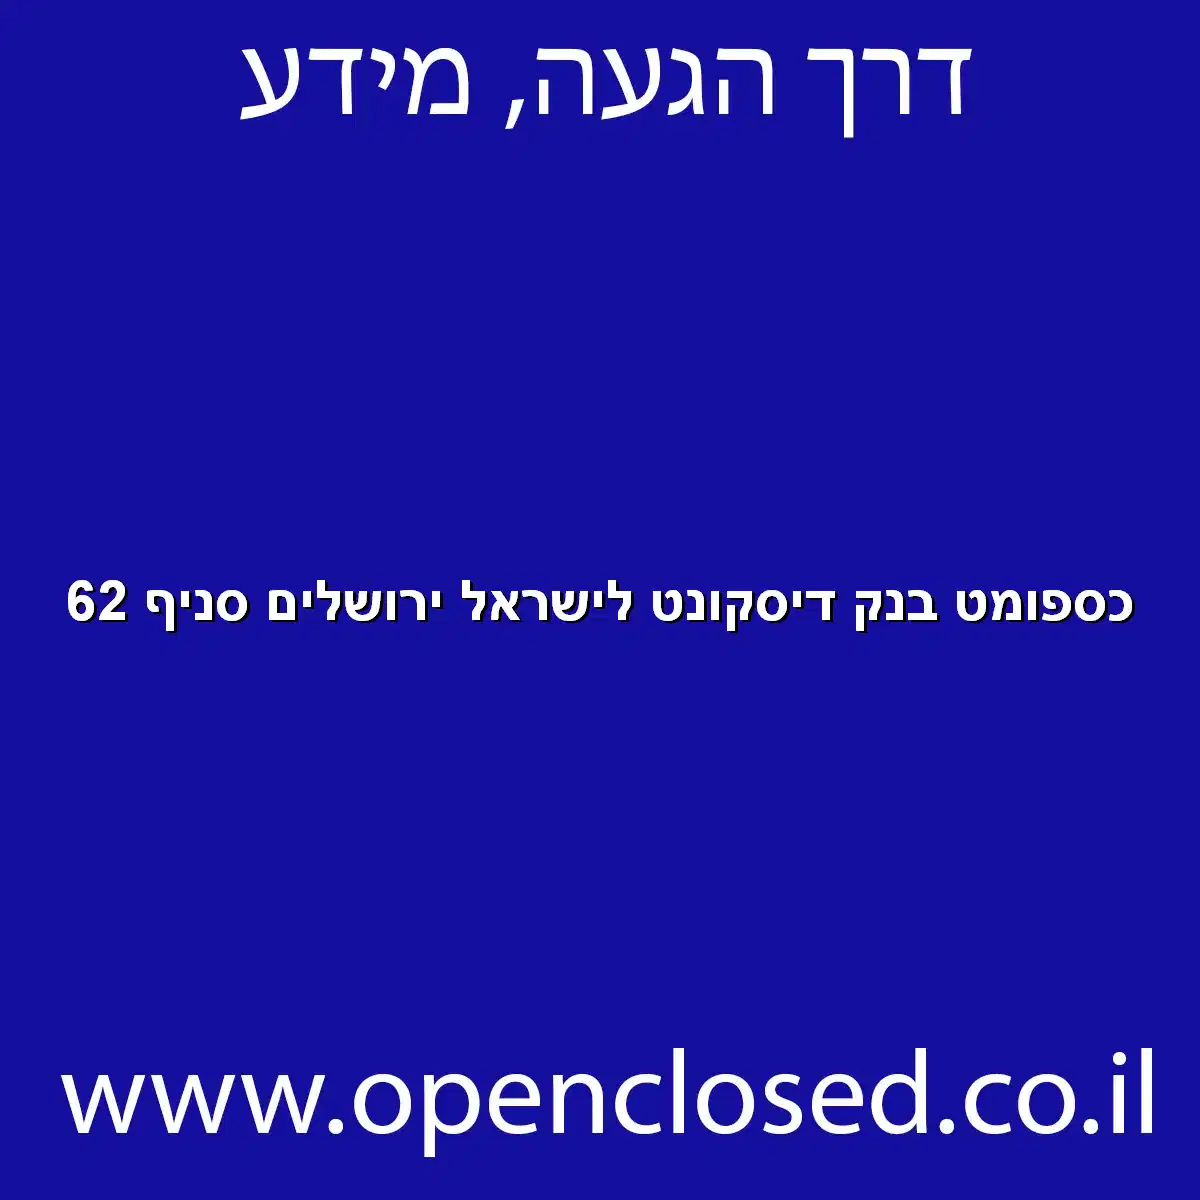 כספומט בנק דיסקונט לישראל ירושלים סניף 62